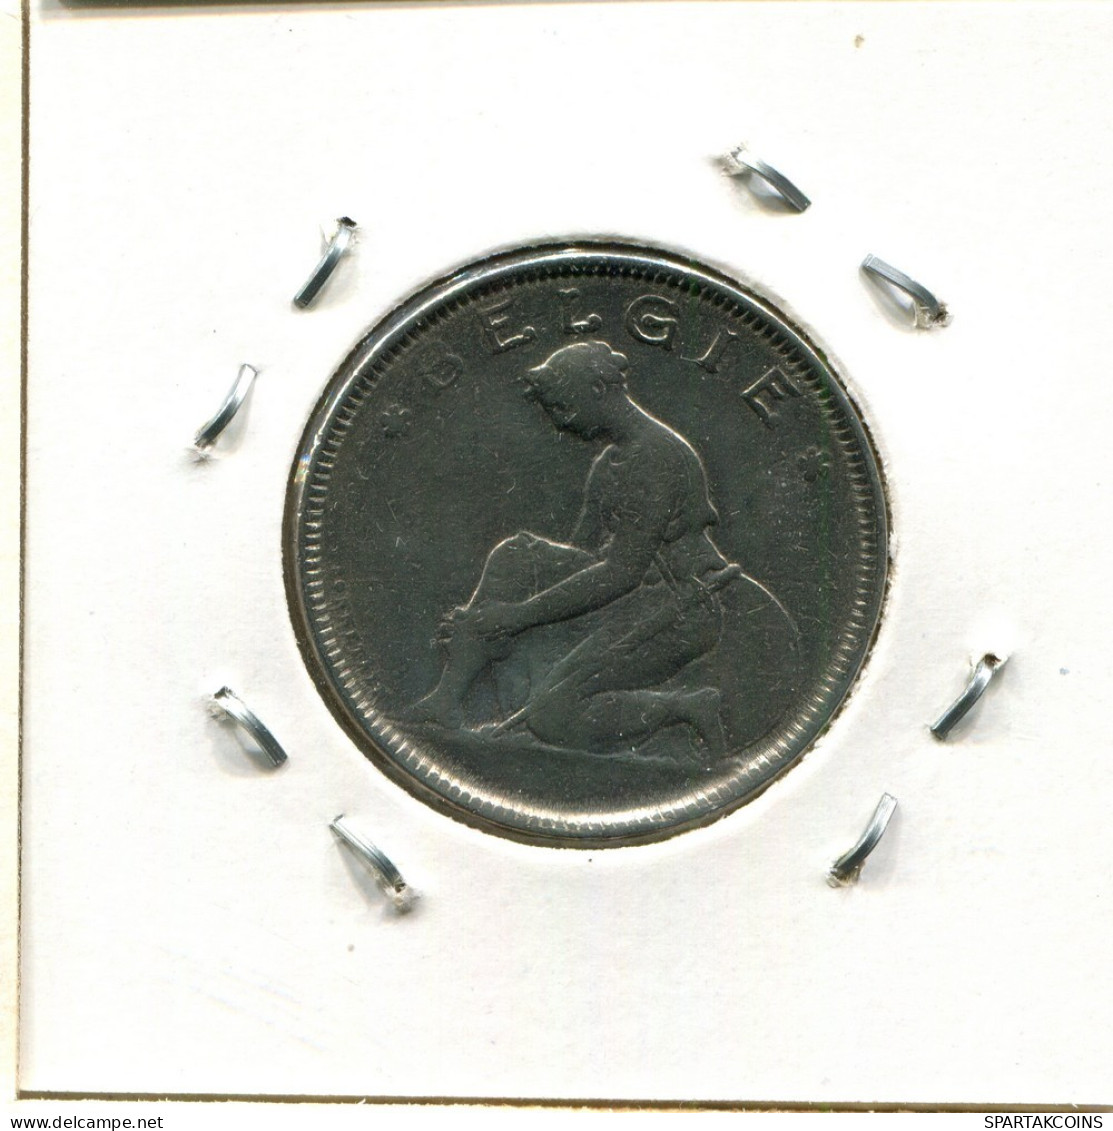 2 FRANCS 1923 DUTCH Text BÉLGICA BELGIUM Moneda #BA563.E.A - 2 Francos